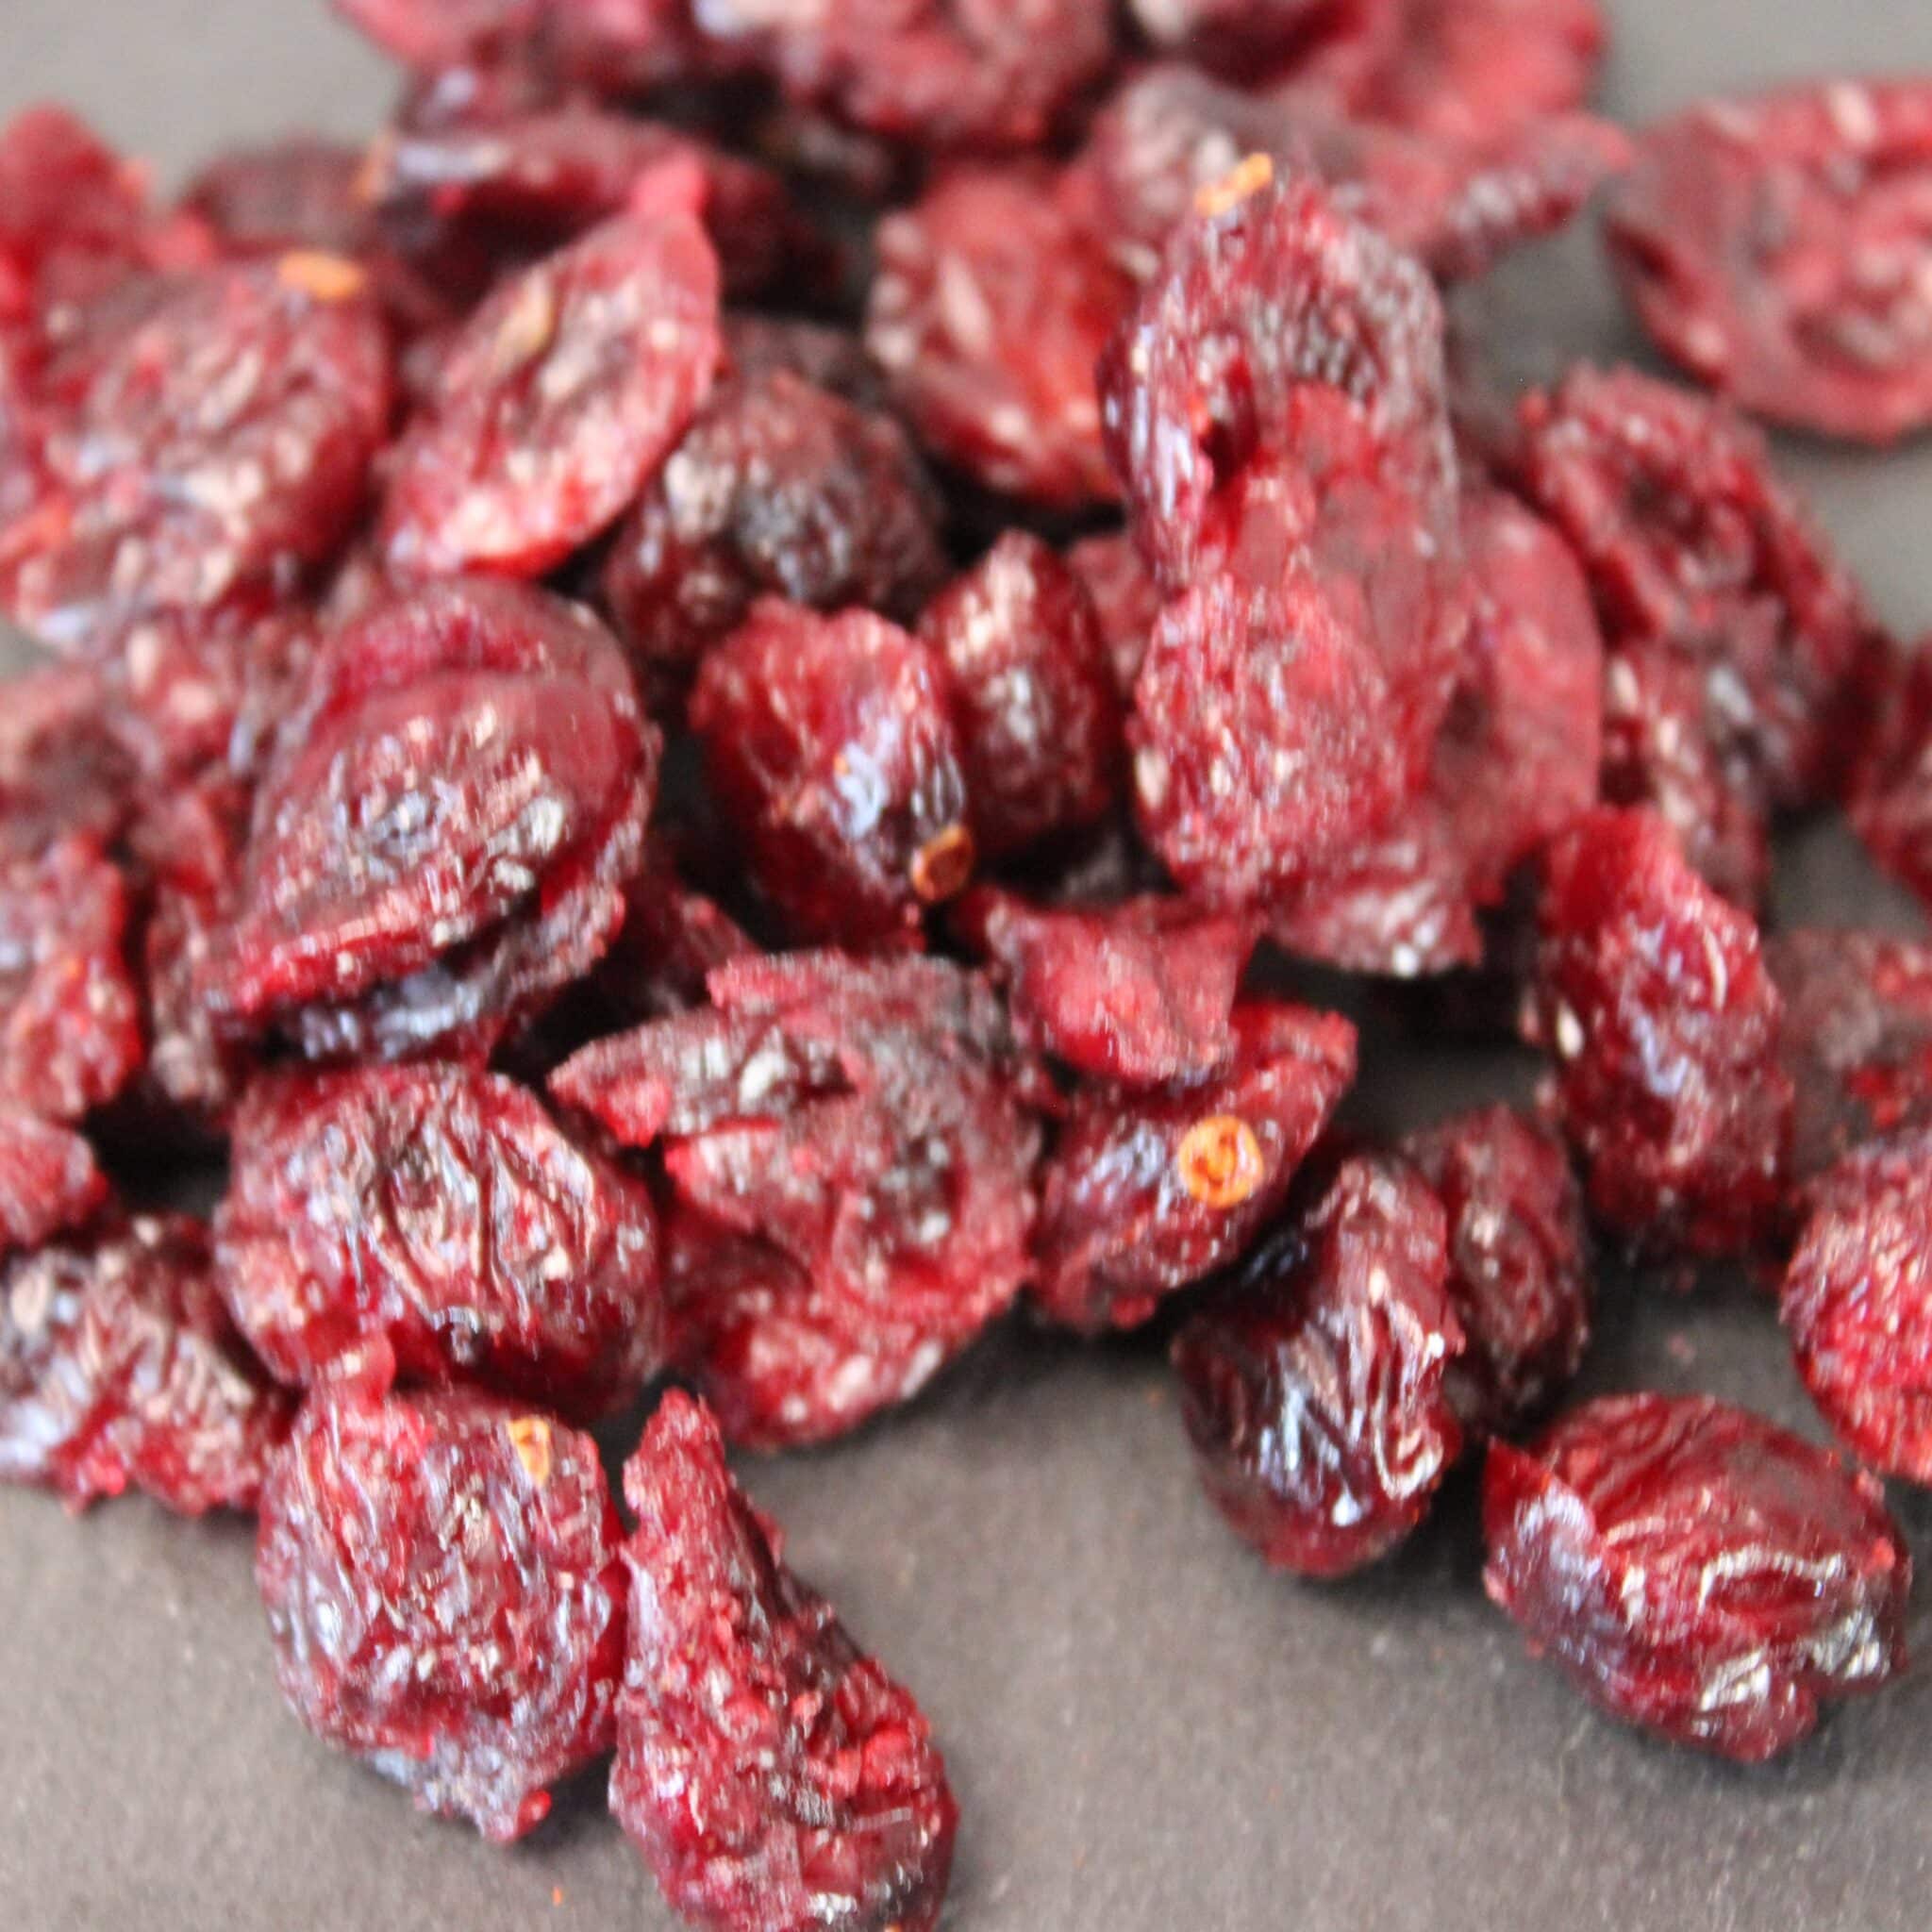 Baies de cranberry séchées (canneberge) - Utilisation en cuisine,  propriétés bienfaits et histoire